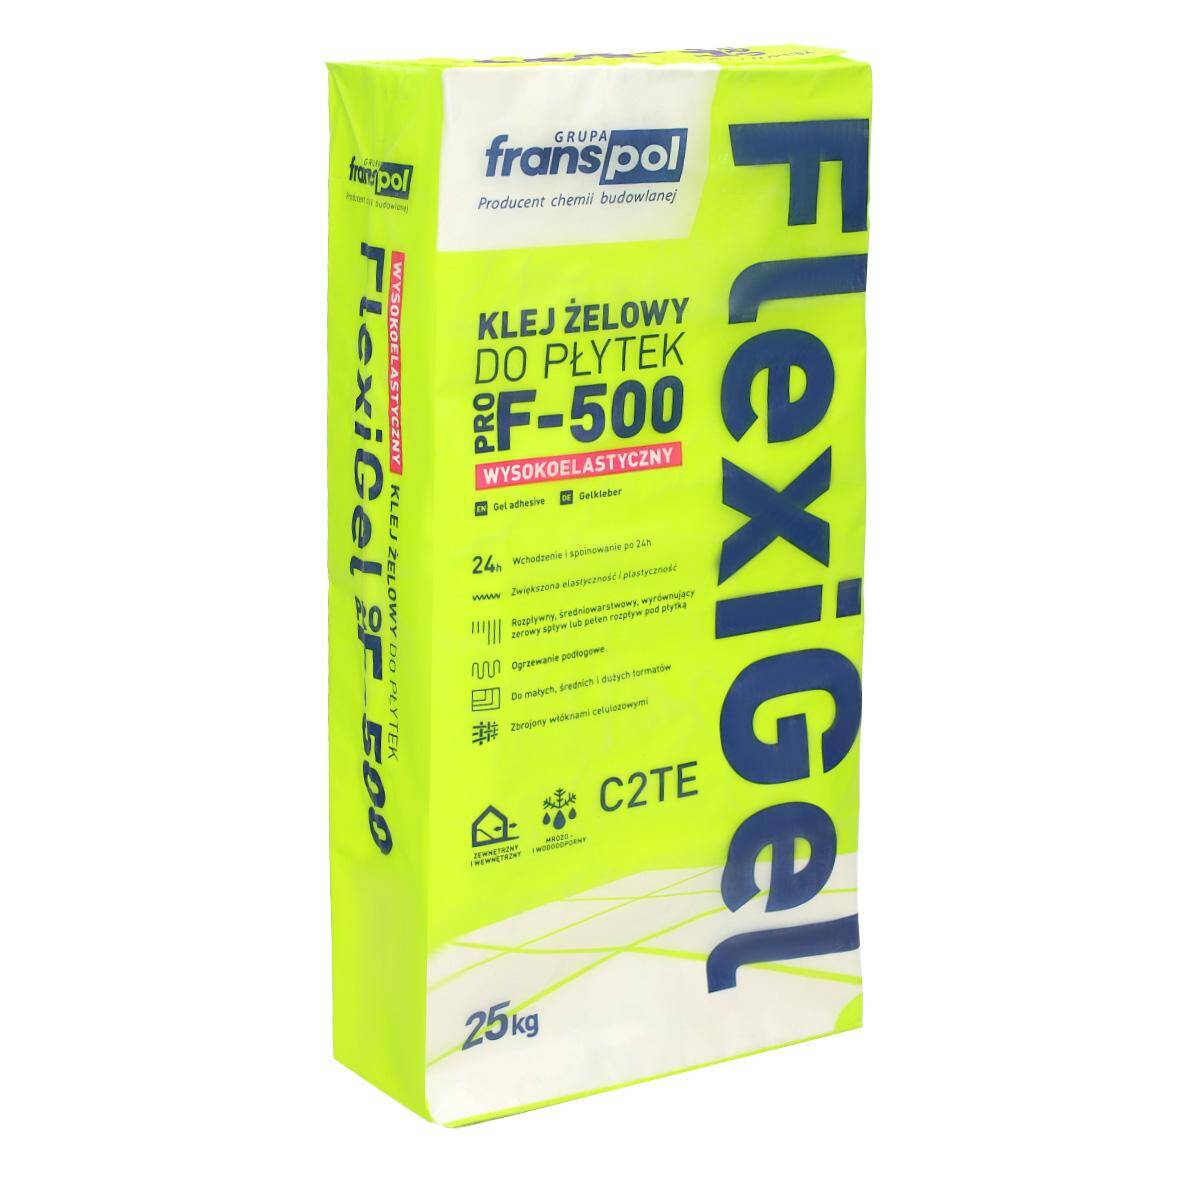 Klej do płytek żelowy FlexiGel PRO F-500 C2TE Franspol 25 kg